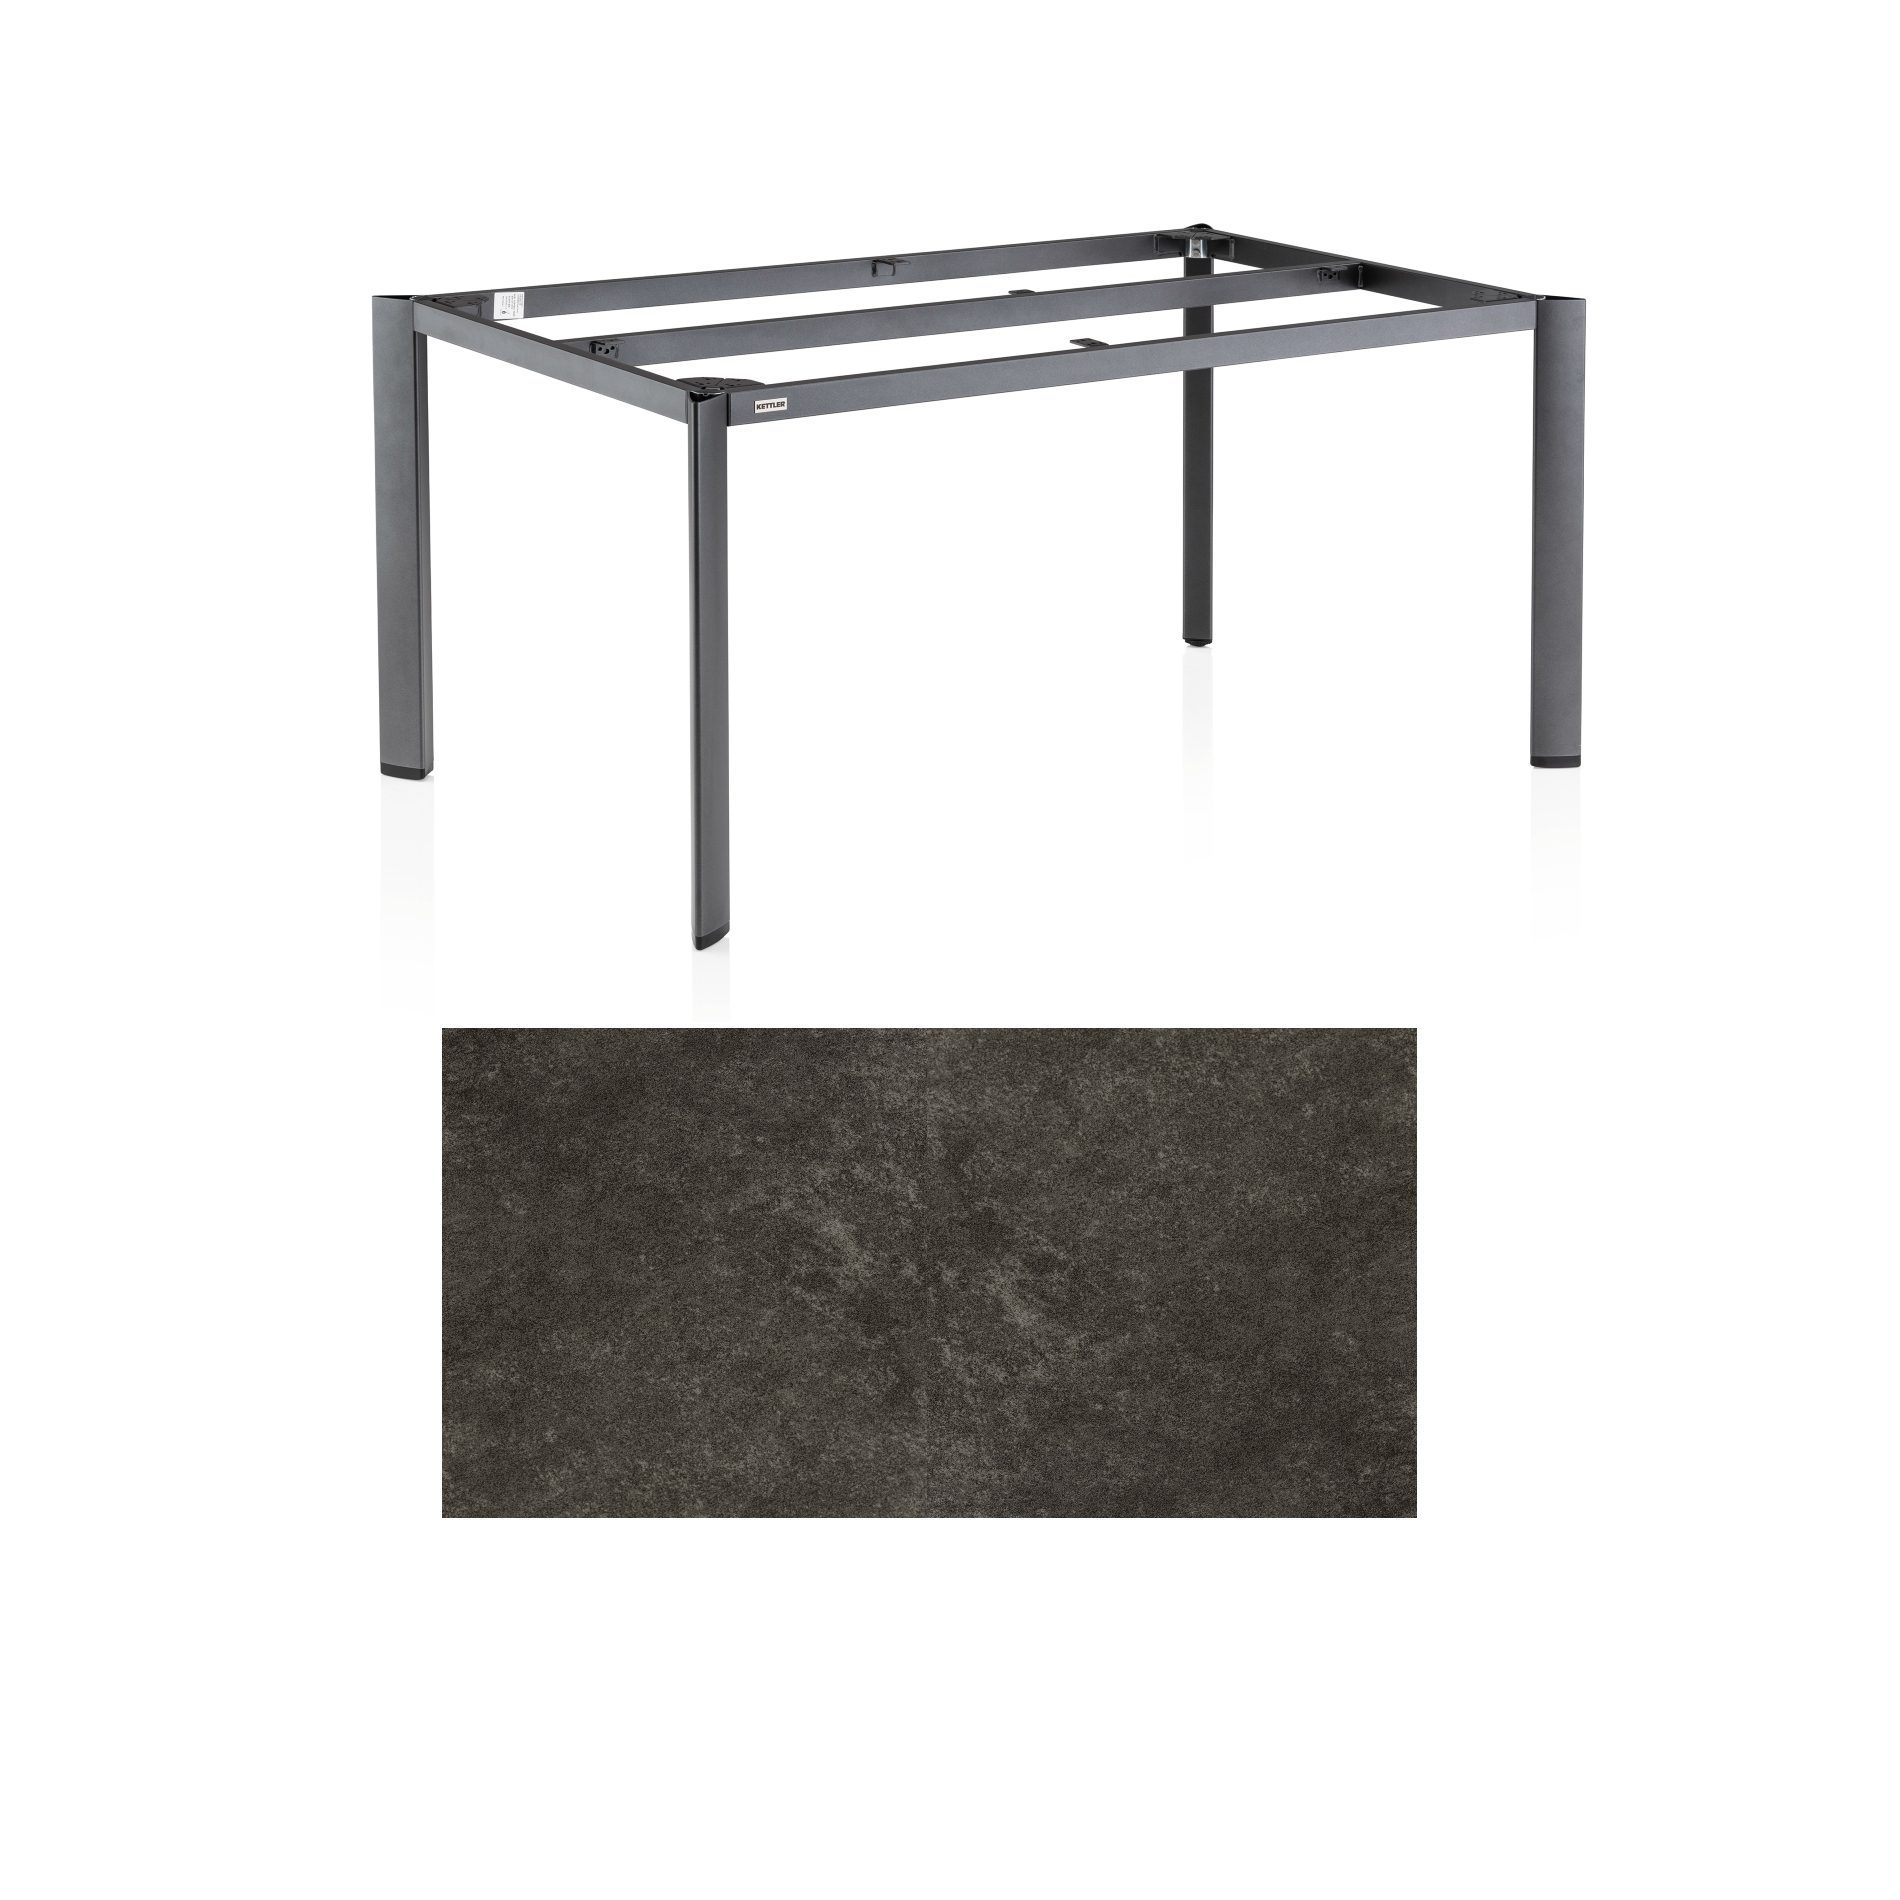 Kettler "Edge" Gartentisch, Gestell Aluminium anthrazit, Tischplatte Keramik anthrazit, 180x95 cm